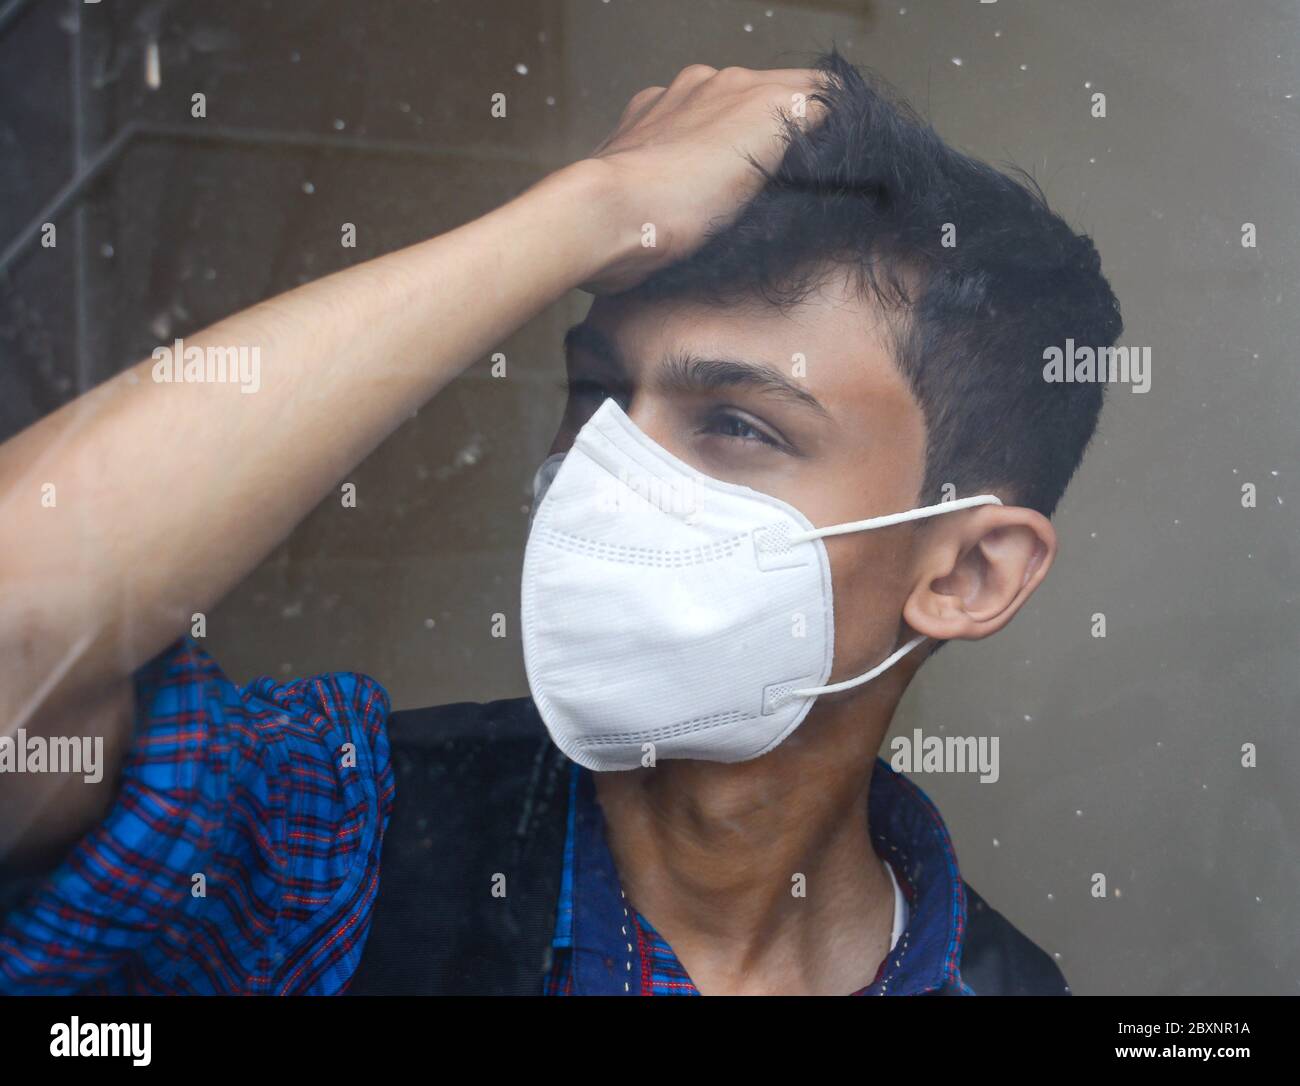 Ritratto di un uomo teen che indossa maschera facciale. Vita stressante di studente teen. Foto Stock